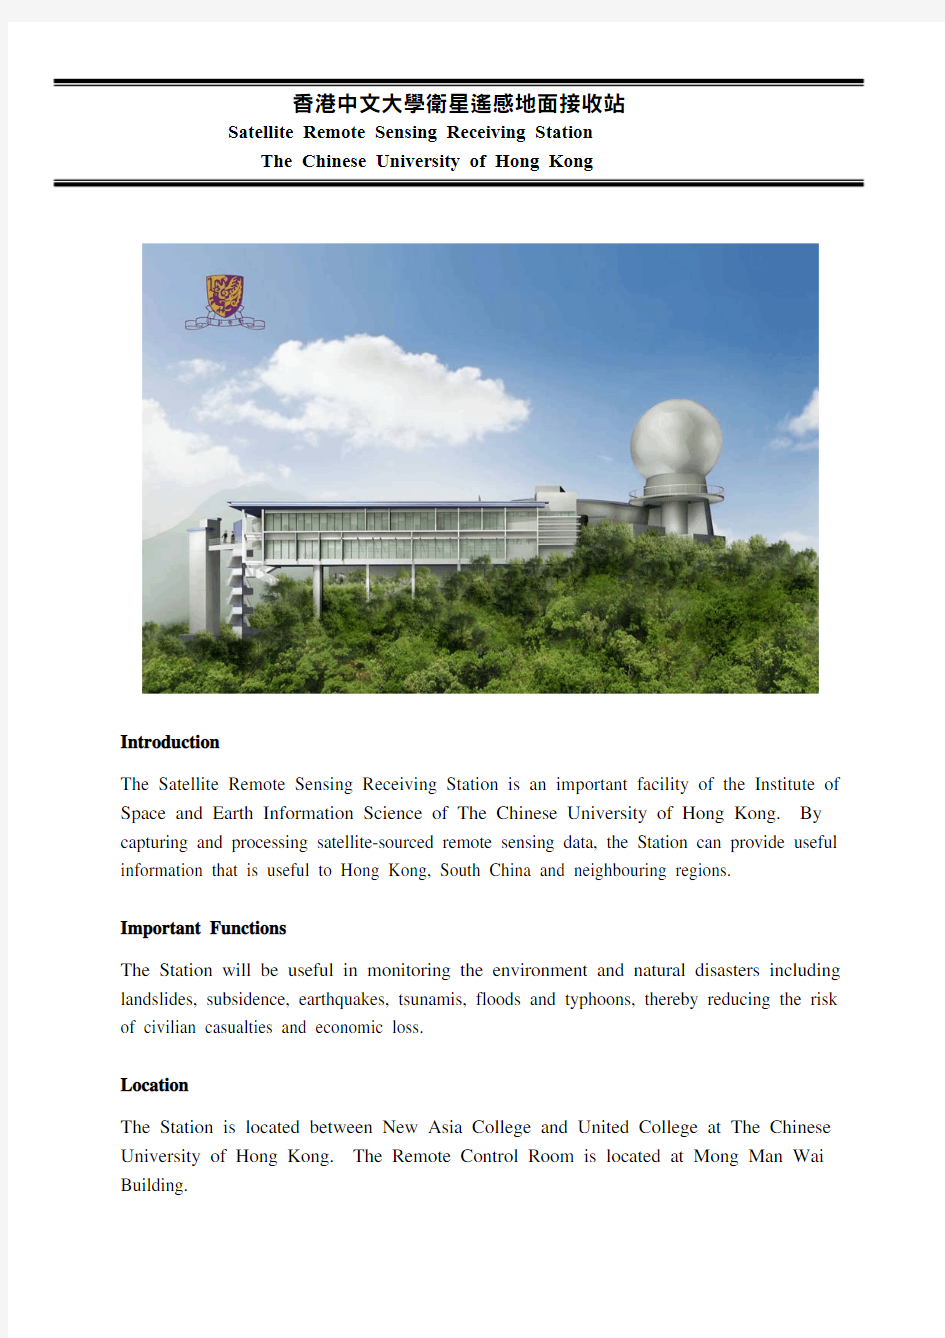 香港中文大学卫星遥感地面接收站-CUHK